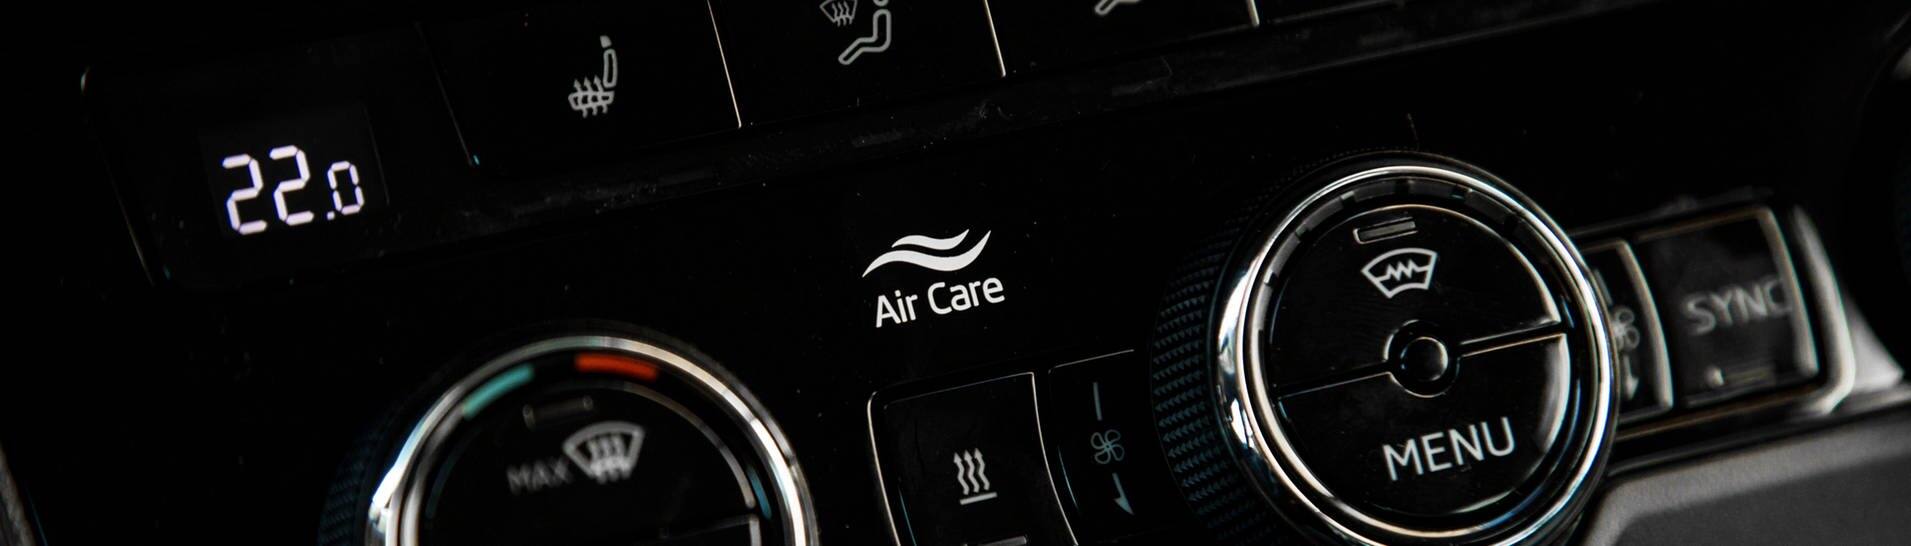 Wie funktioniert die Klimaanlage in einem Auto?